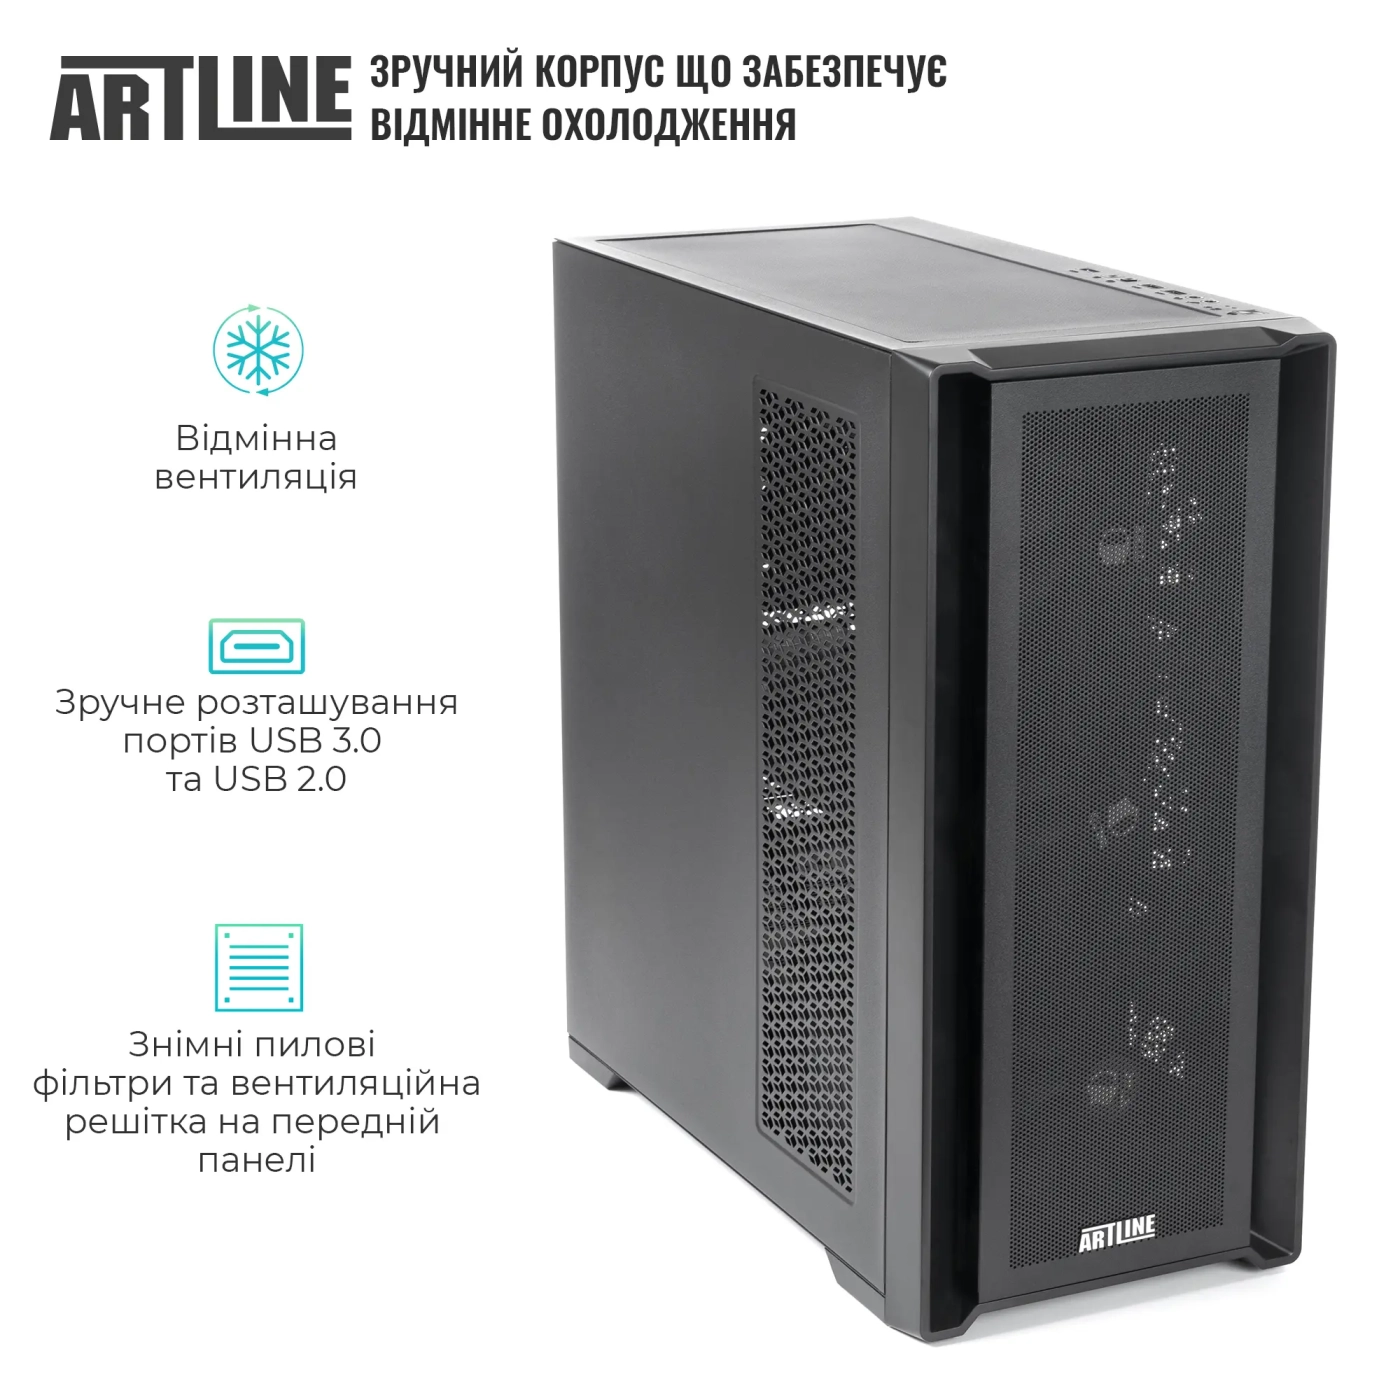 Купить Сервер ARTLINE Business T81 (T81v23) - фото 2